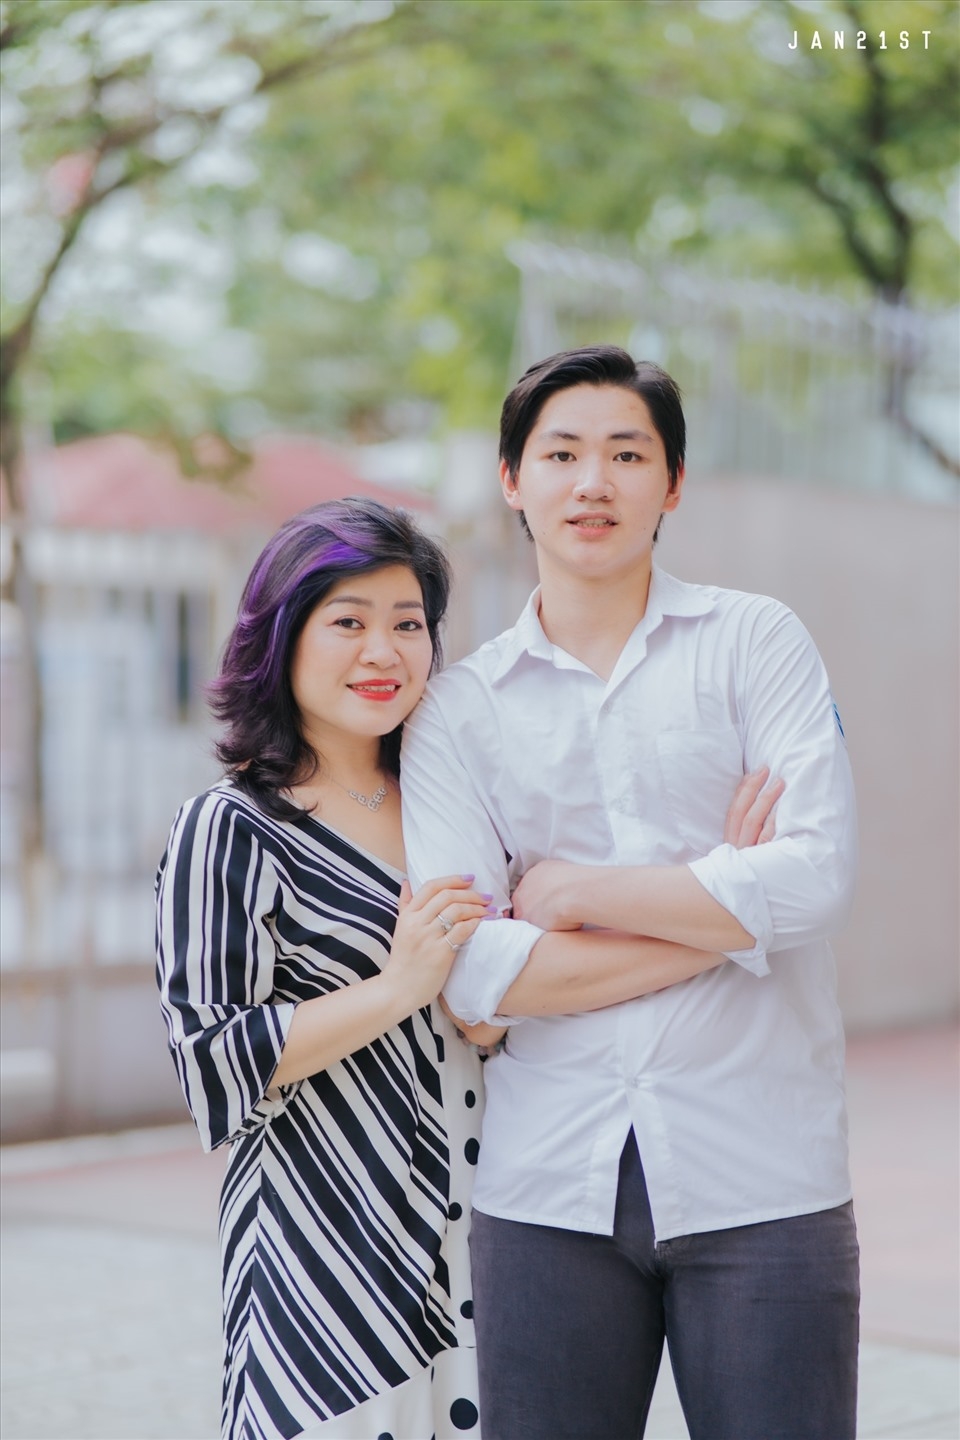 Tỷ lệ tốt nghiệp THPT tại Hà Nội đạt hơn 99%